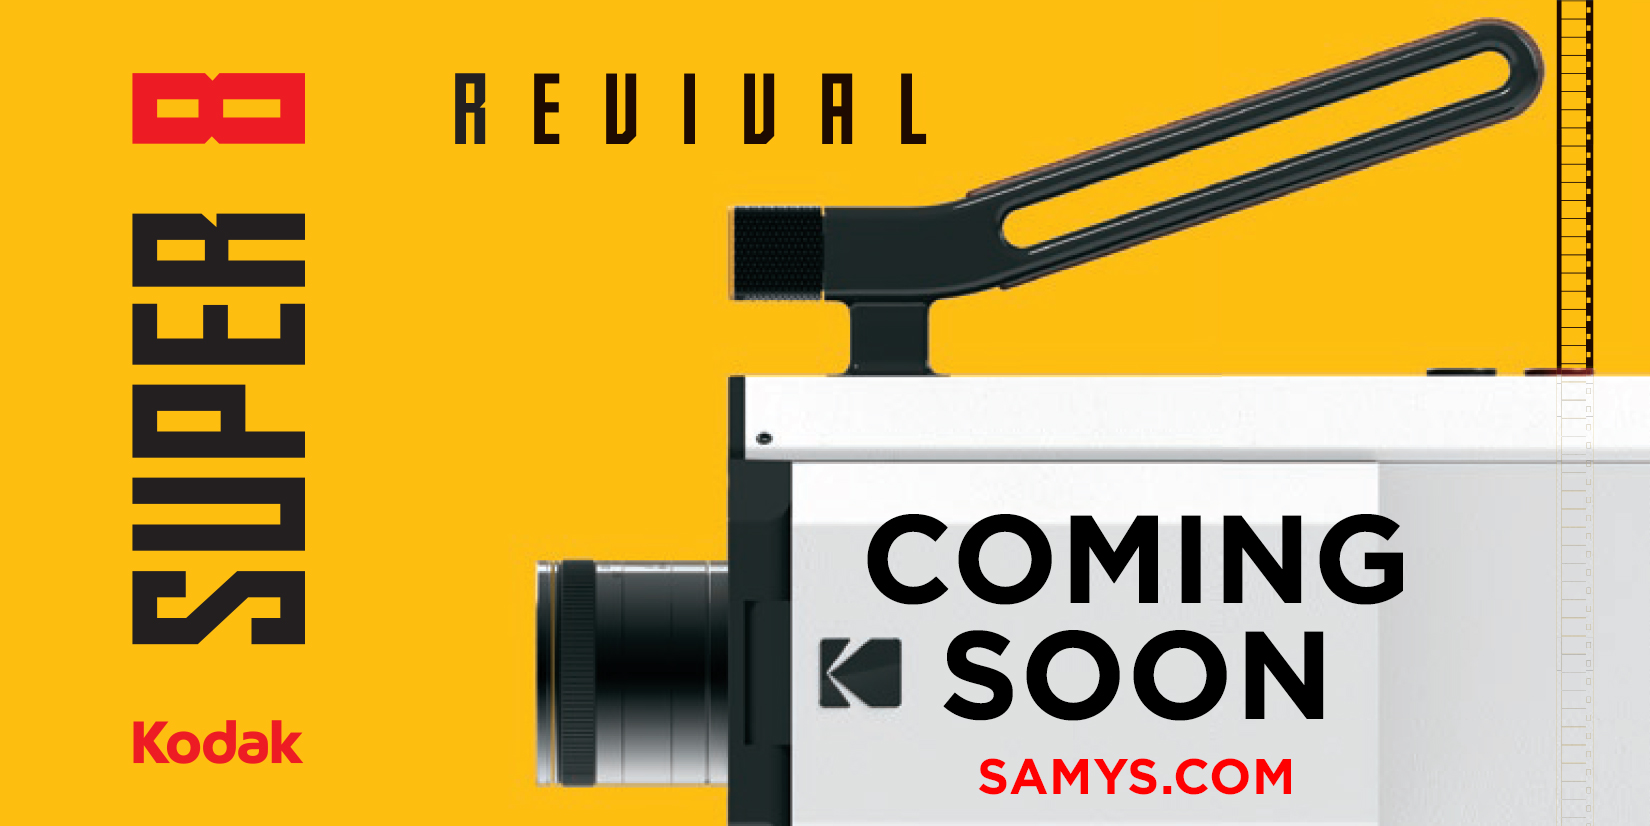 Kodak Announces Super 8 Camera Revival